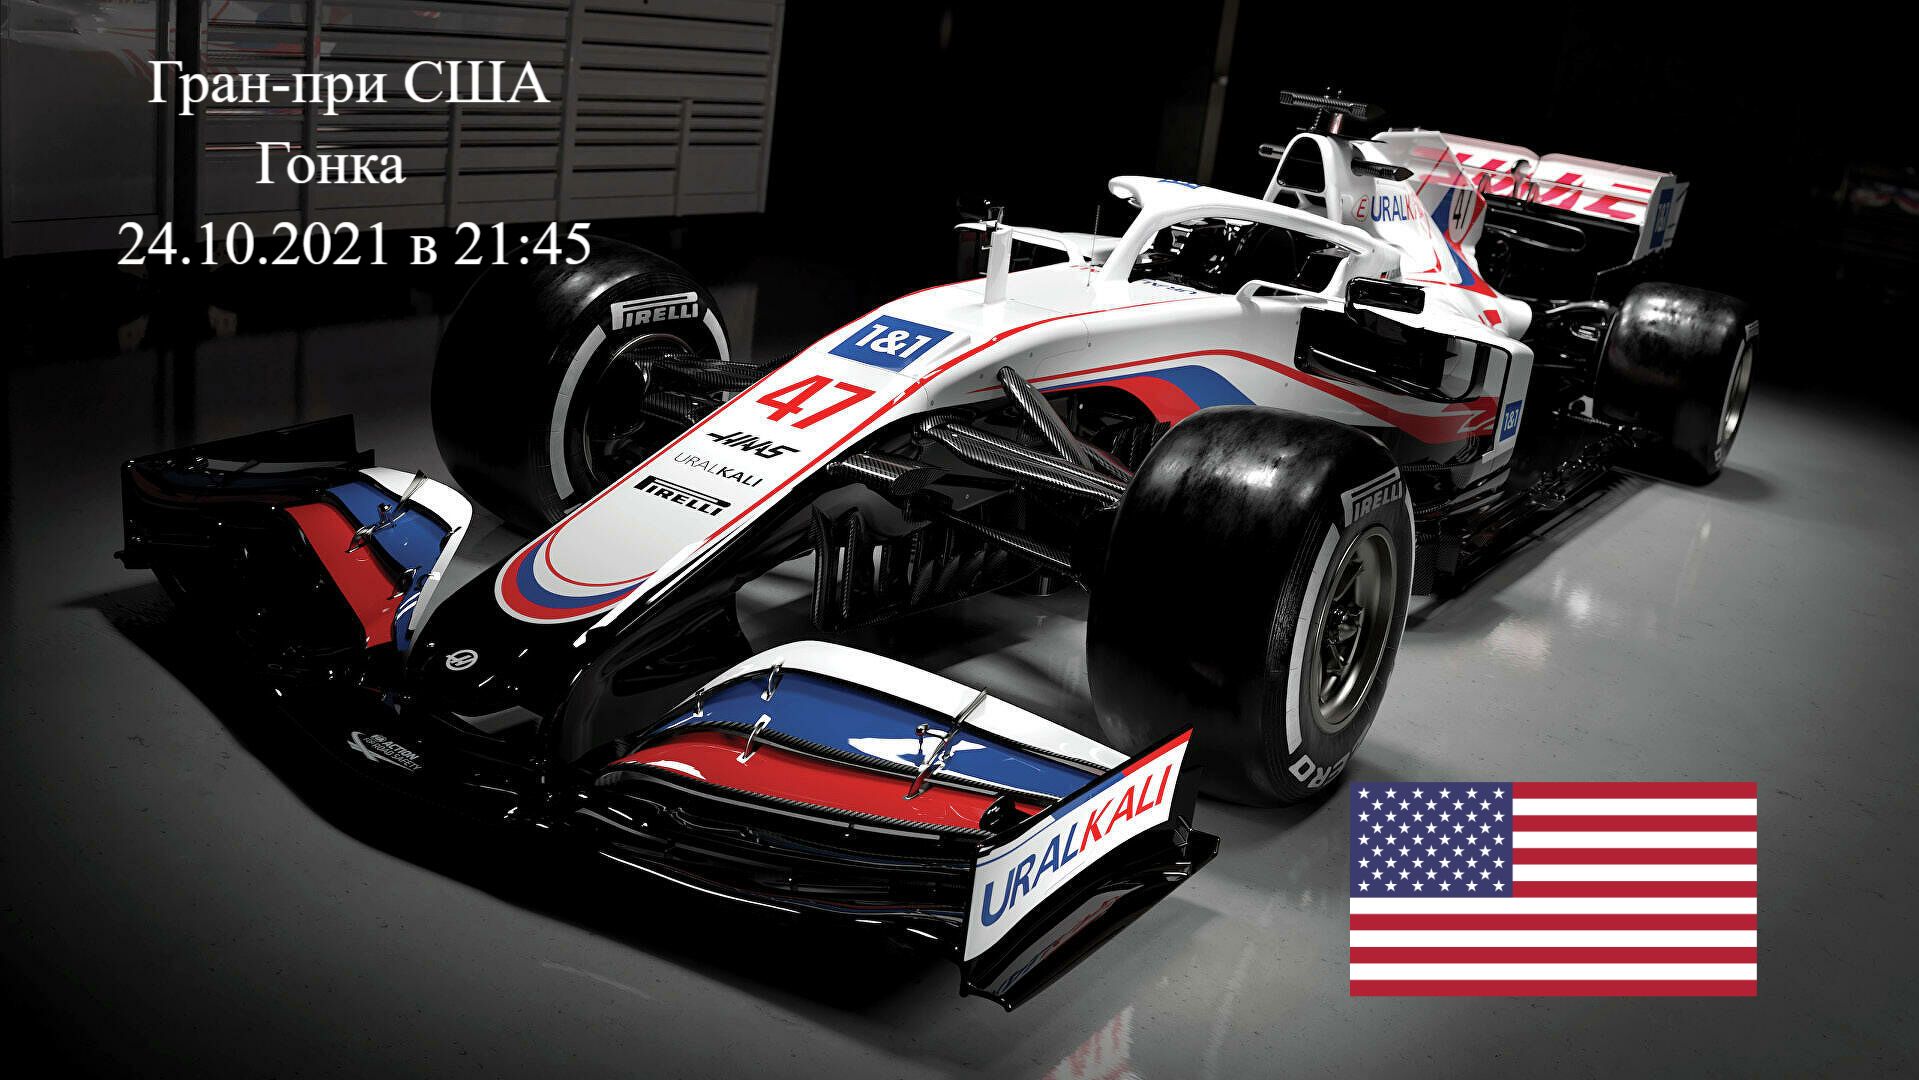 Формула 1 Гран-при США 2021, Гонка 24.10.2021